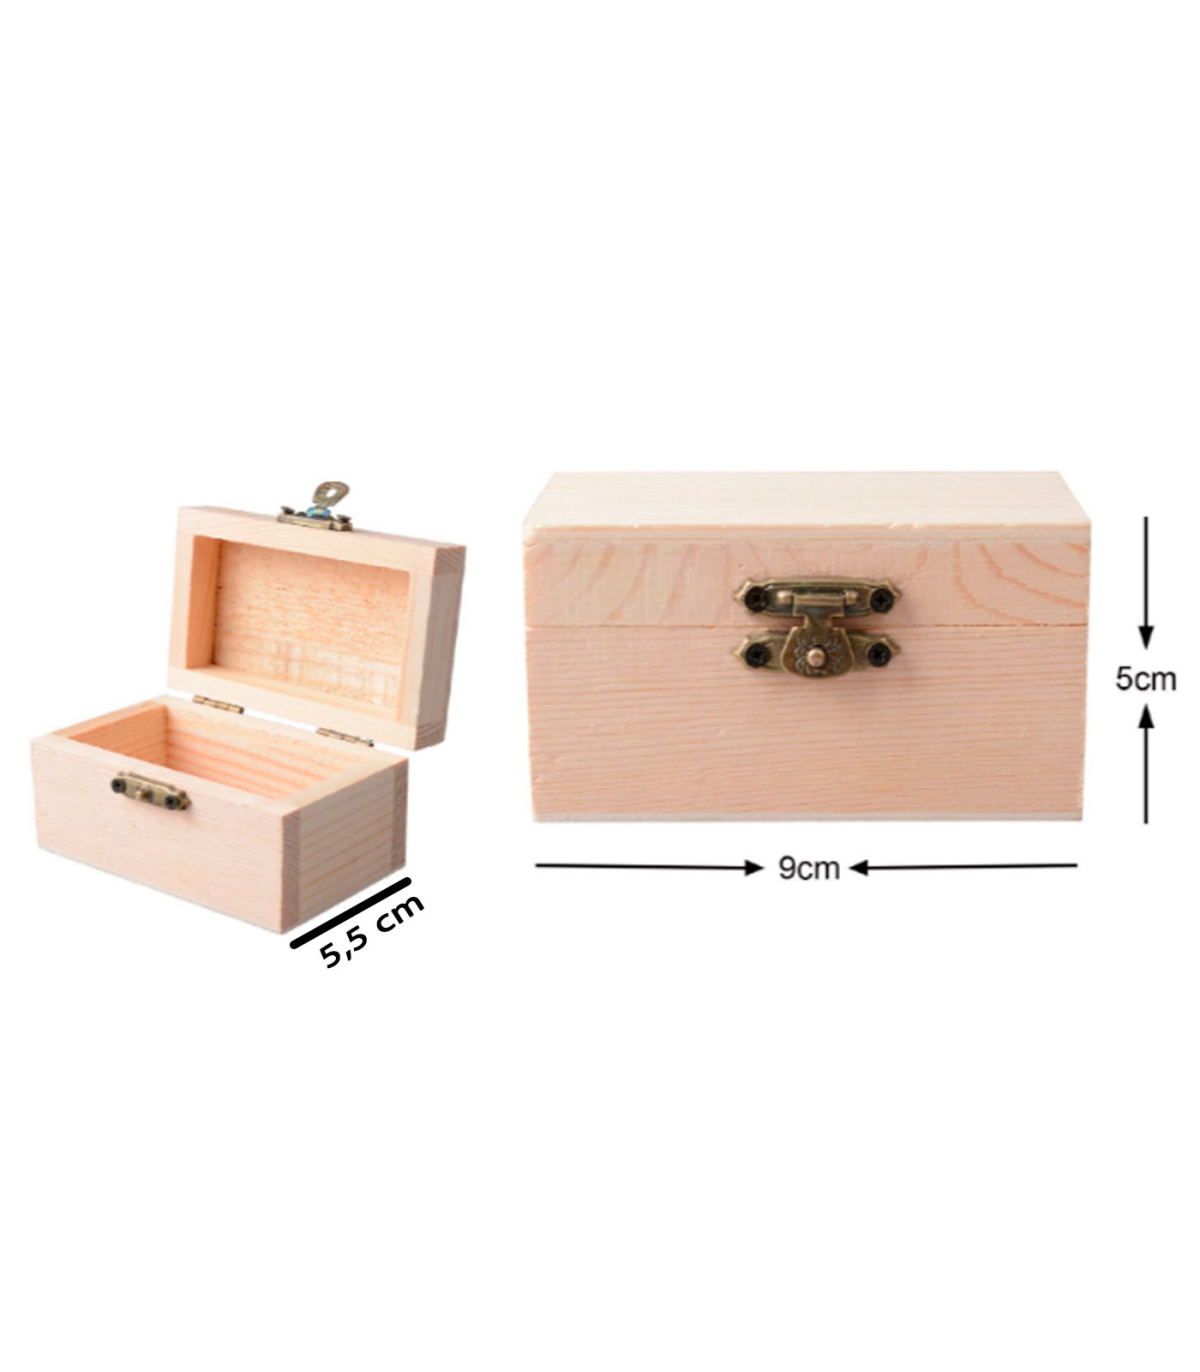 Cajas de madera pequeñas – Sincla